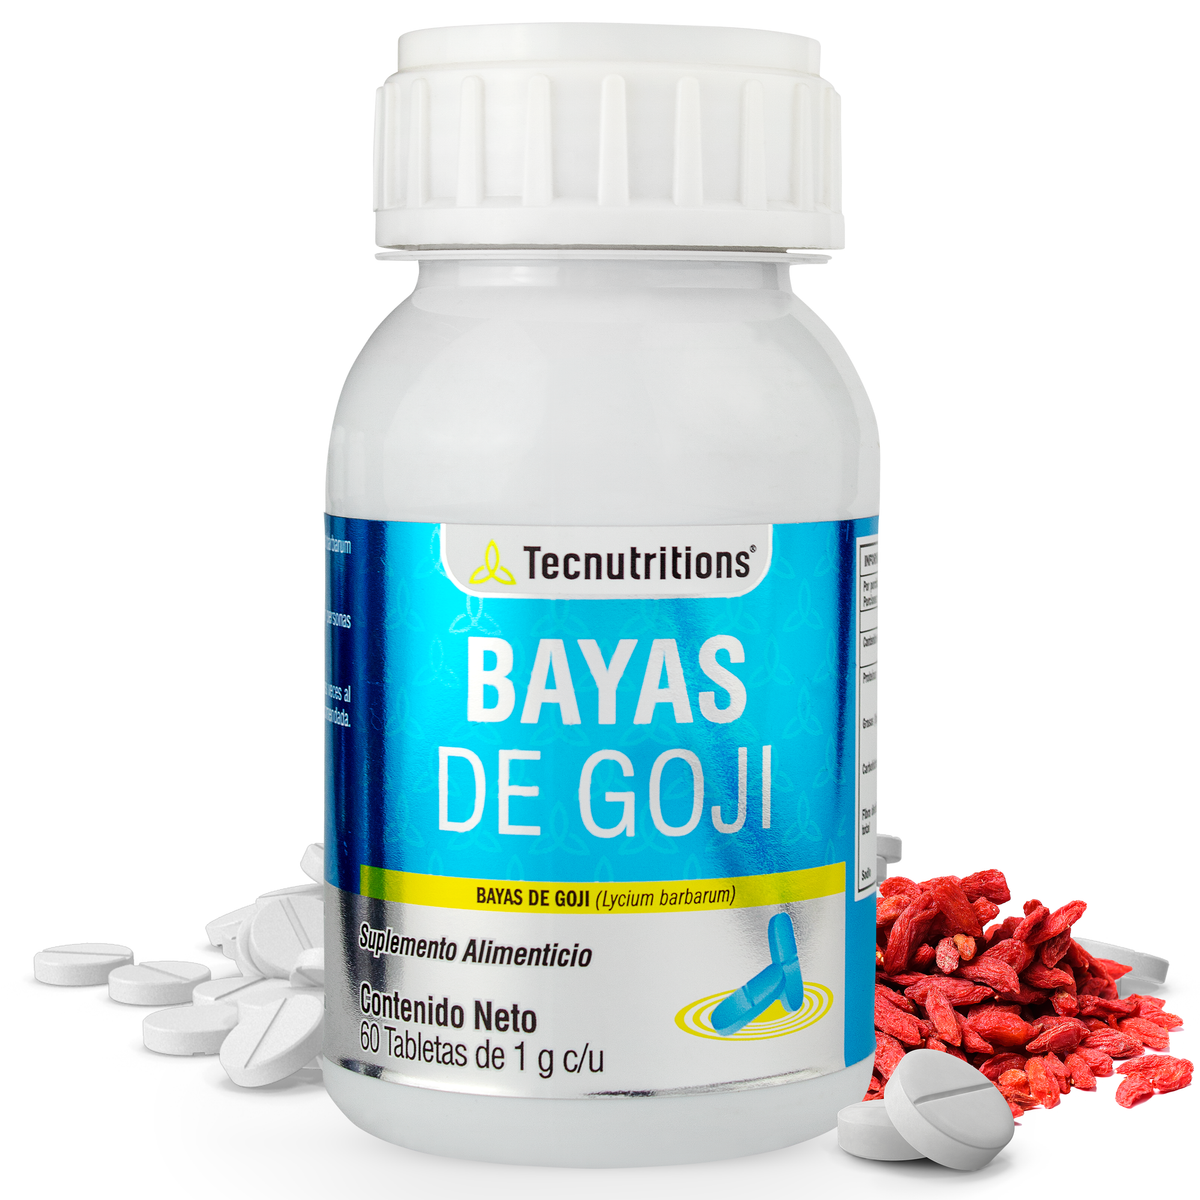 Suplemento alimenticio Bayas de Goji, 60 tabs, con bayas de goji, control de peso